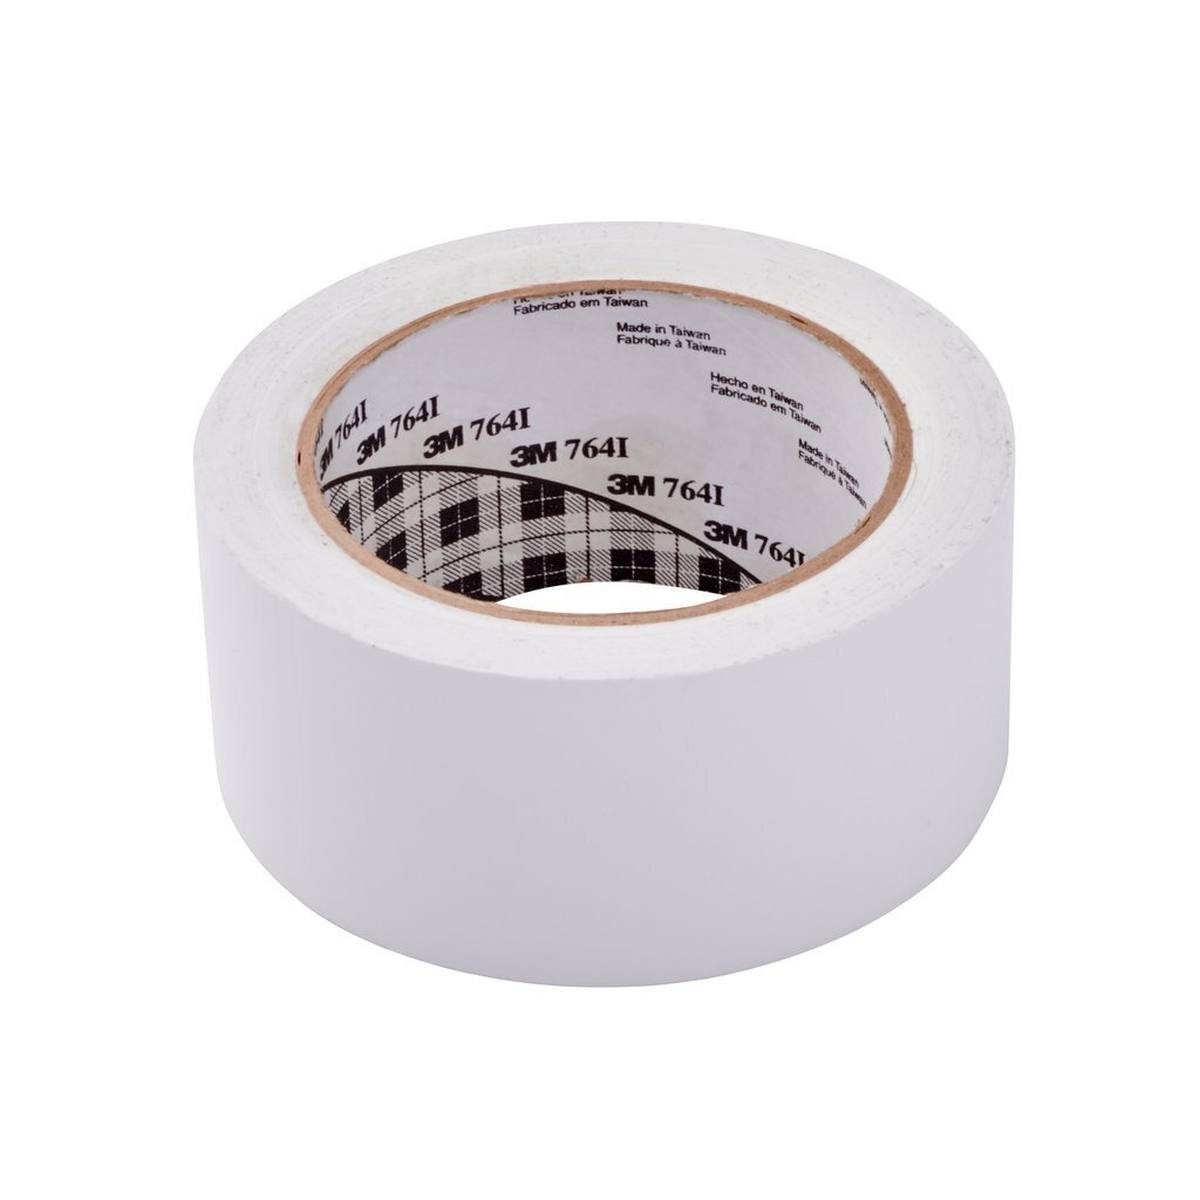 Nastro adesivo 3M multiuso in PVC 764, bianco, 50 mm x 33 m, confezionato singolarmente in un pratico imballaggio